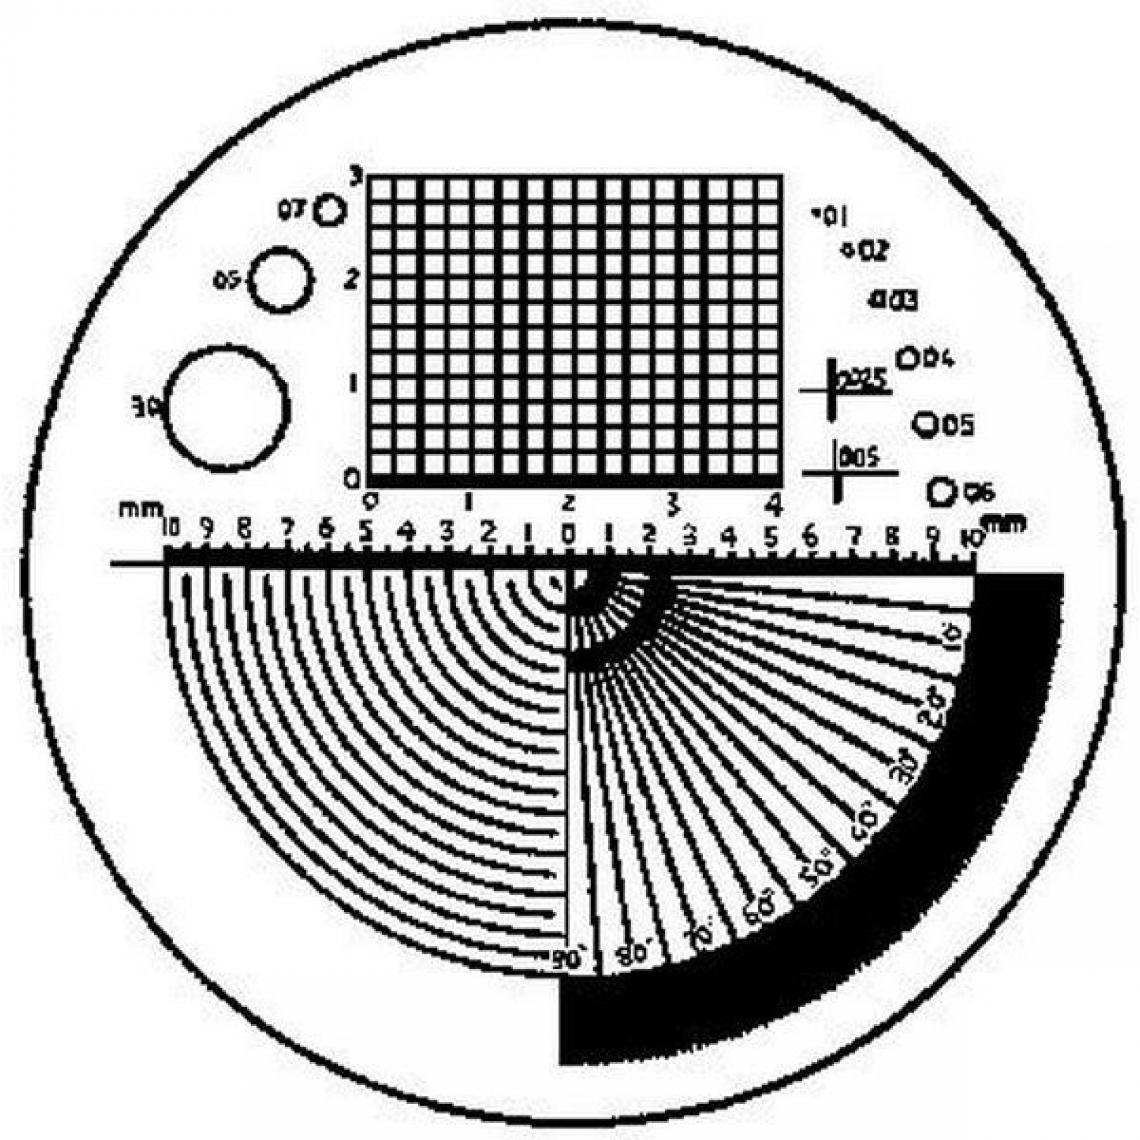 Eschenbach - Echelle graduée de précision de rechange, Type : B, Modèle Grille de polarité, angles, rayons - Echelles